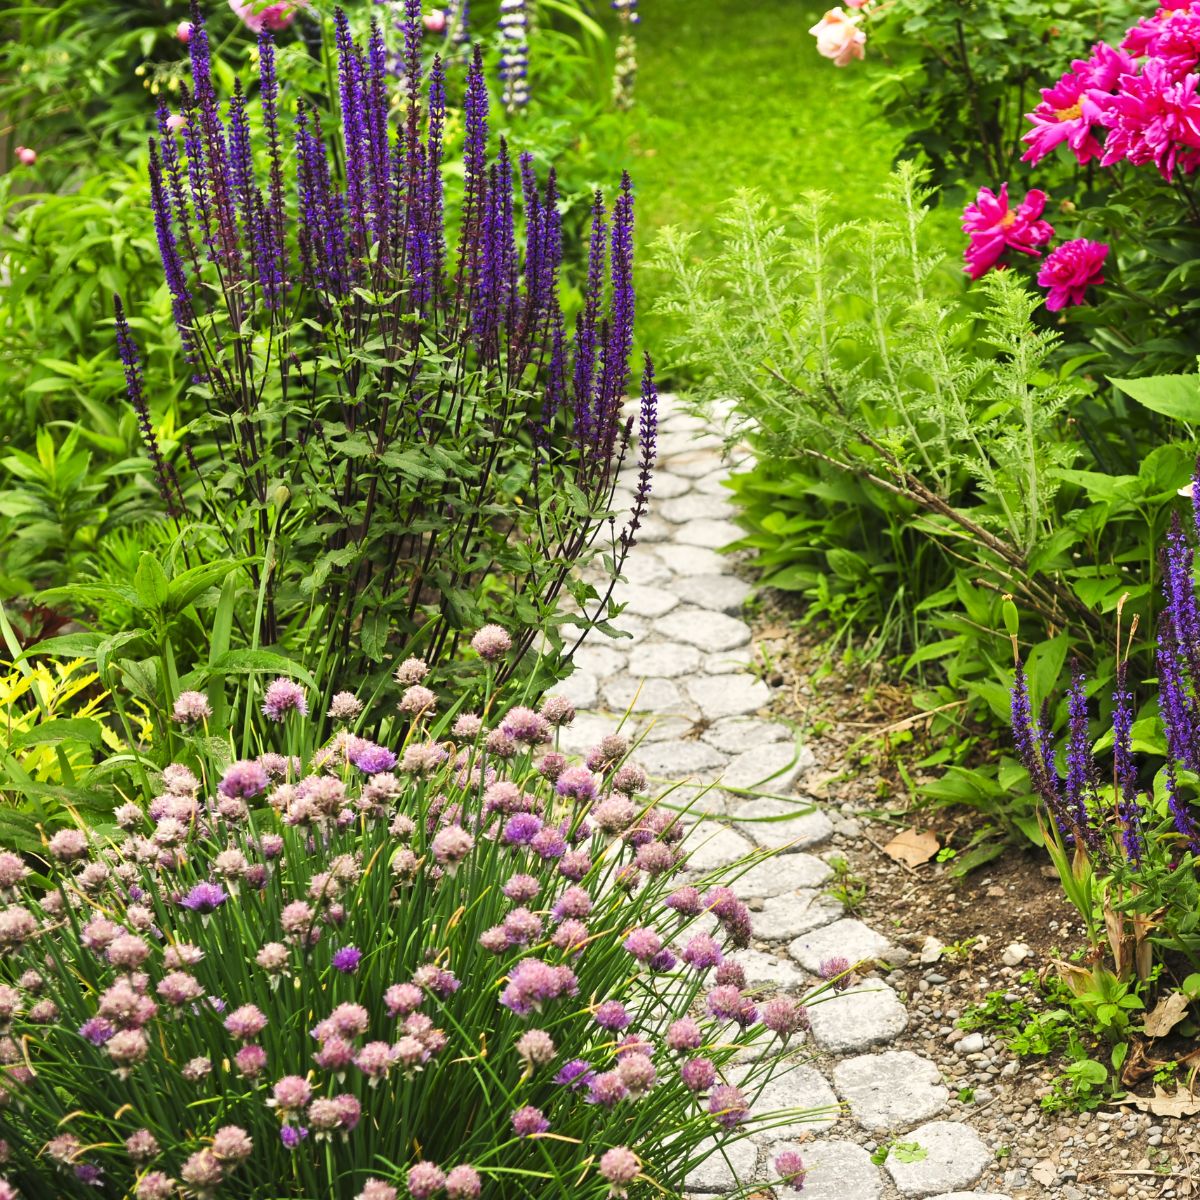 Stone walkway in a flower garden